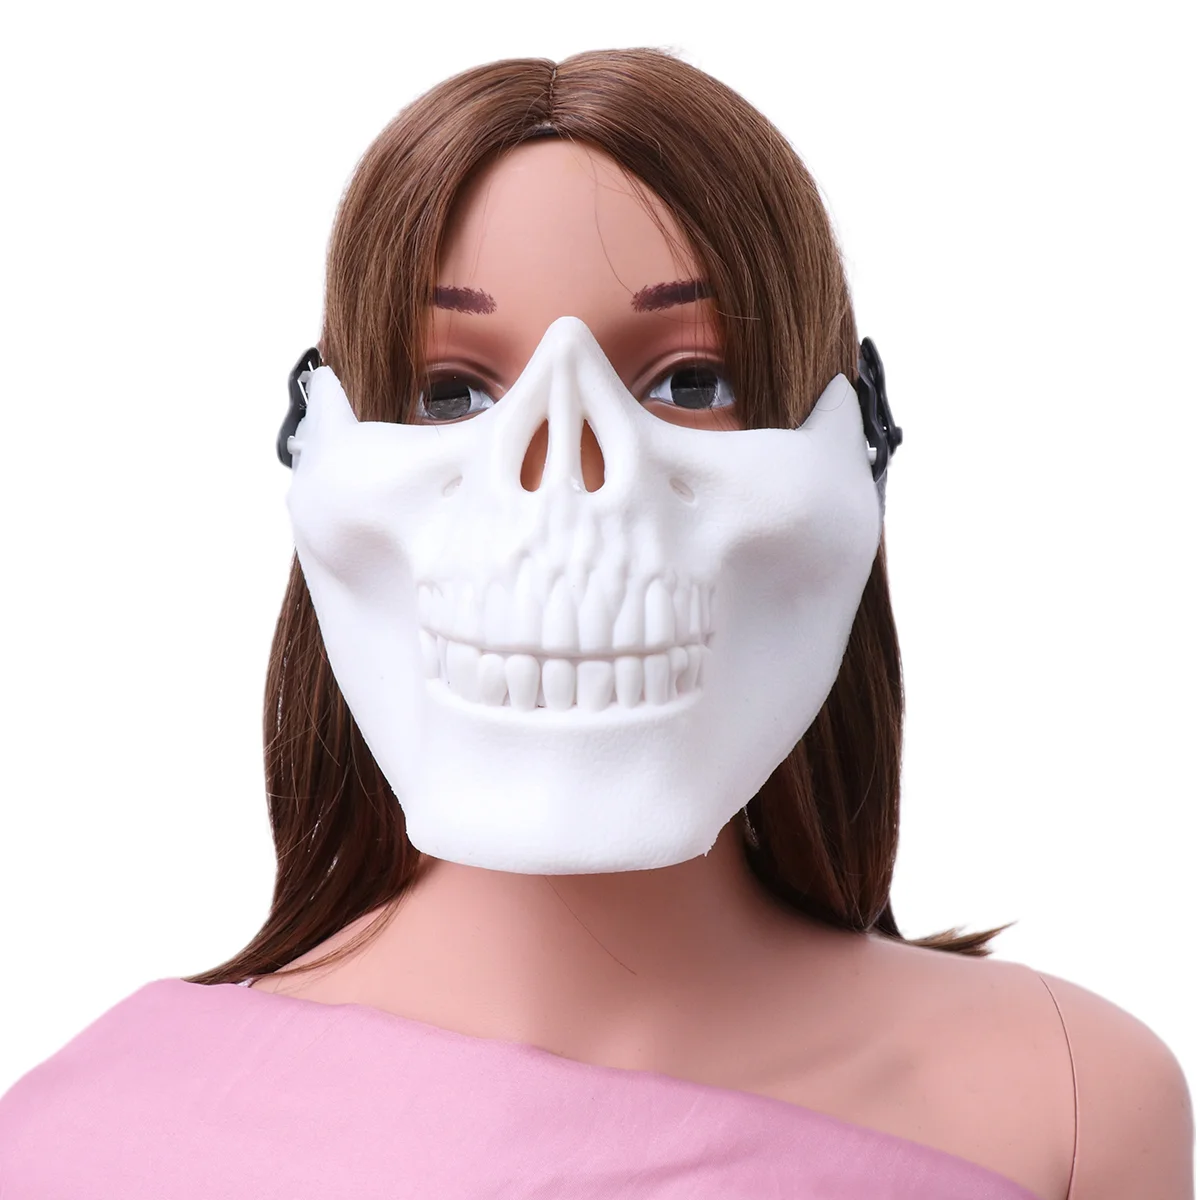 

2 шт. маска на все лицо, маска в форме лица, защитная маска для Хэллоуина, для косплея, маскарада, фото (черно-белая)